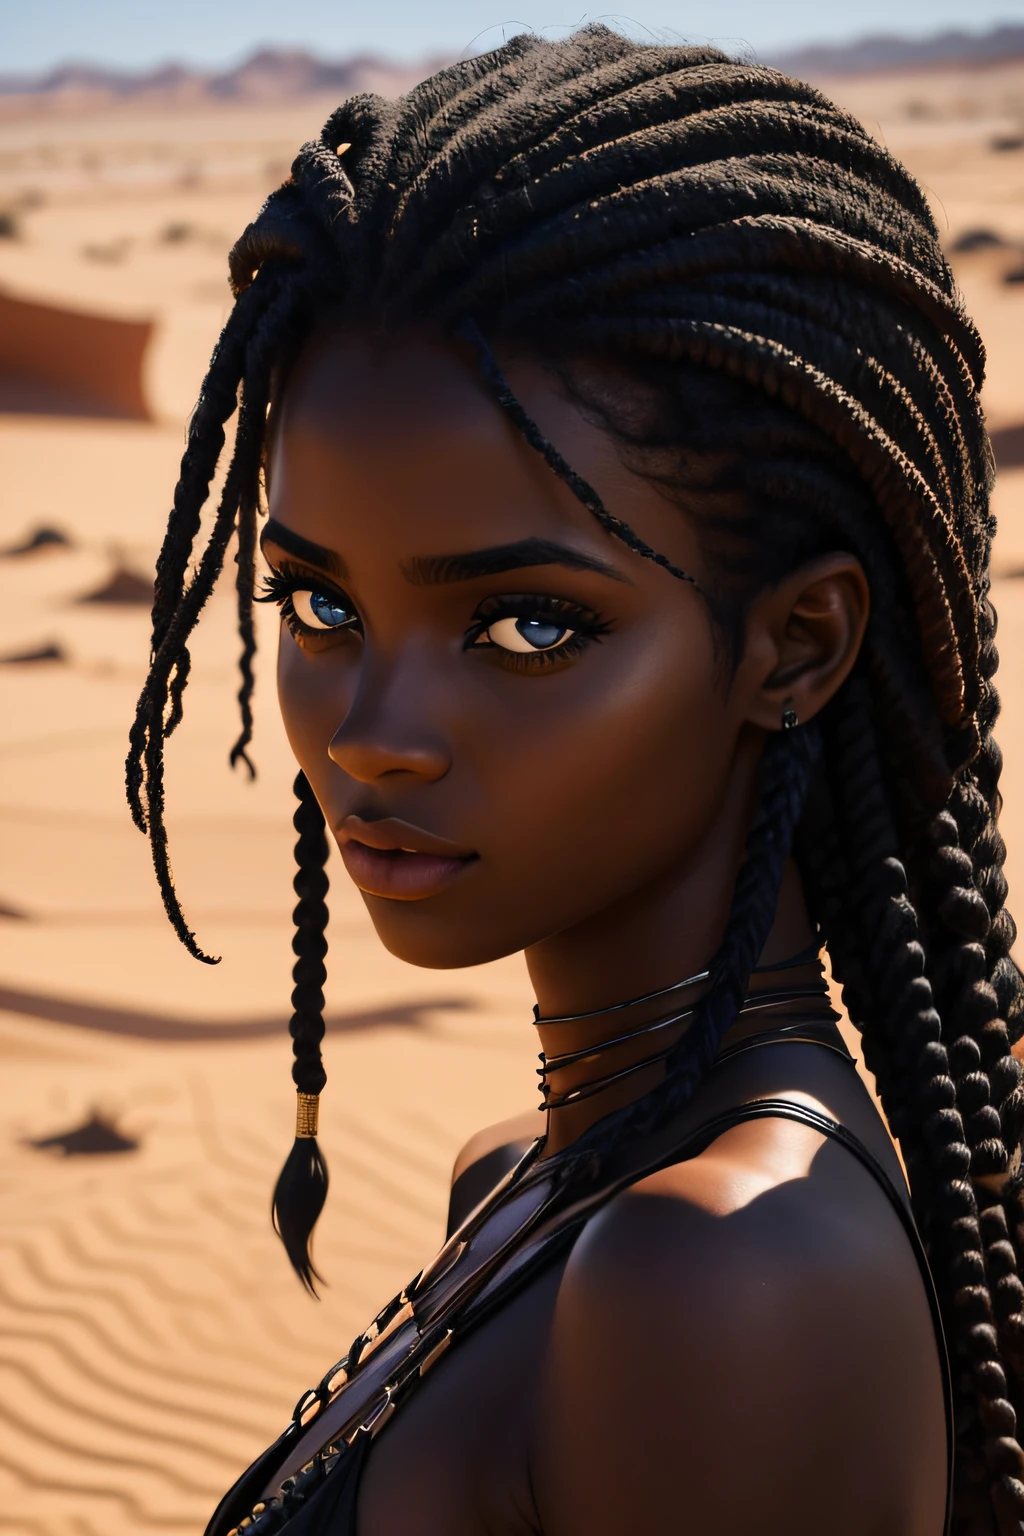 黒人女性, 茶色の目, 年齢 19 歳, 砂漠を歩く, 濡れた, 巻き毛, 魅惑的な表情